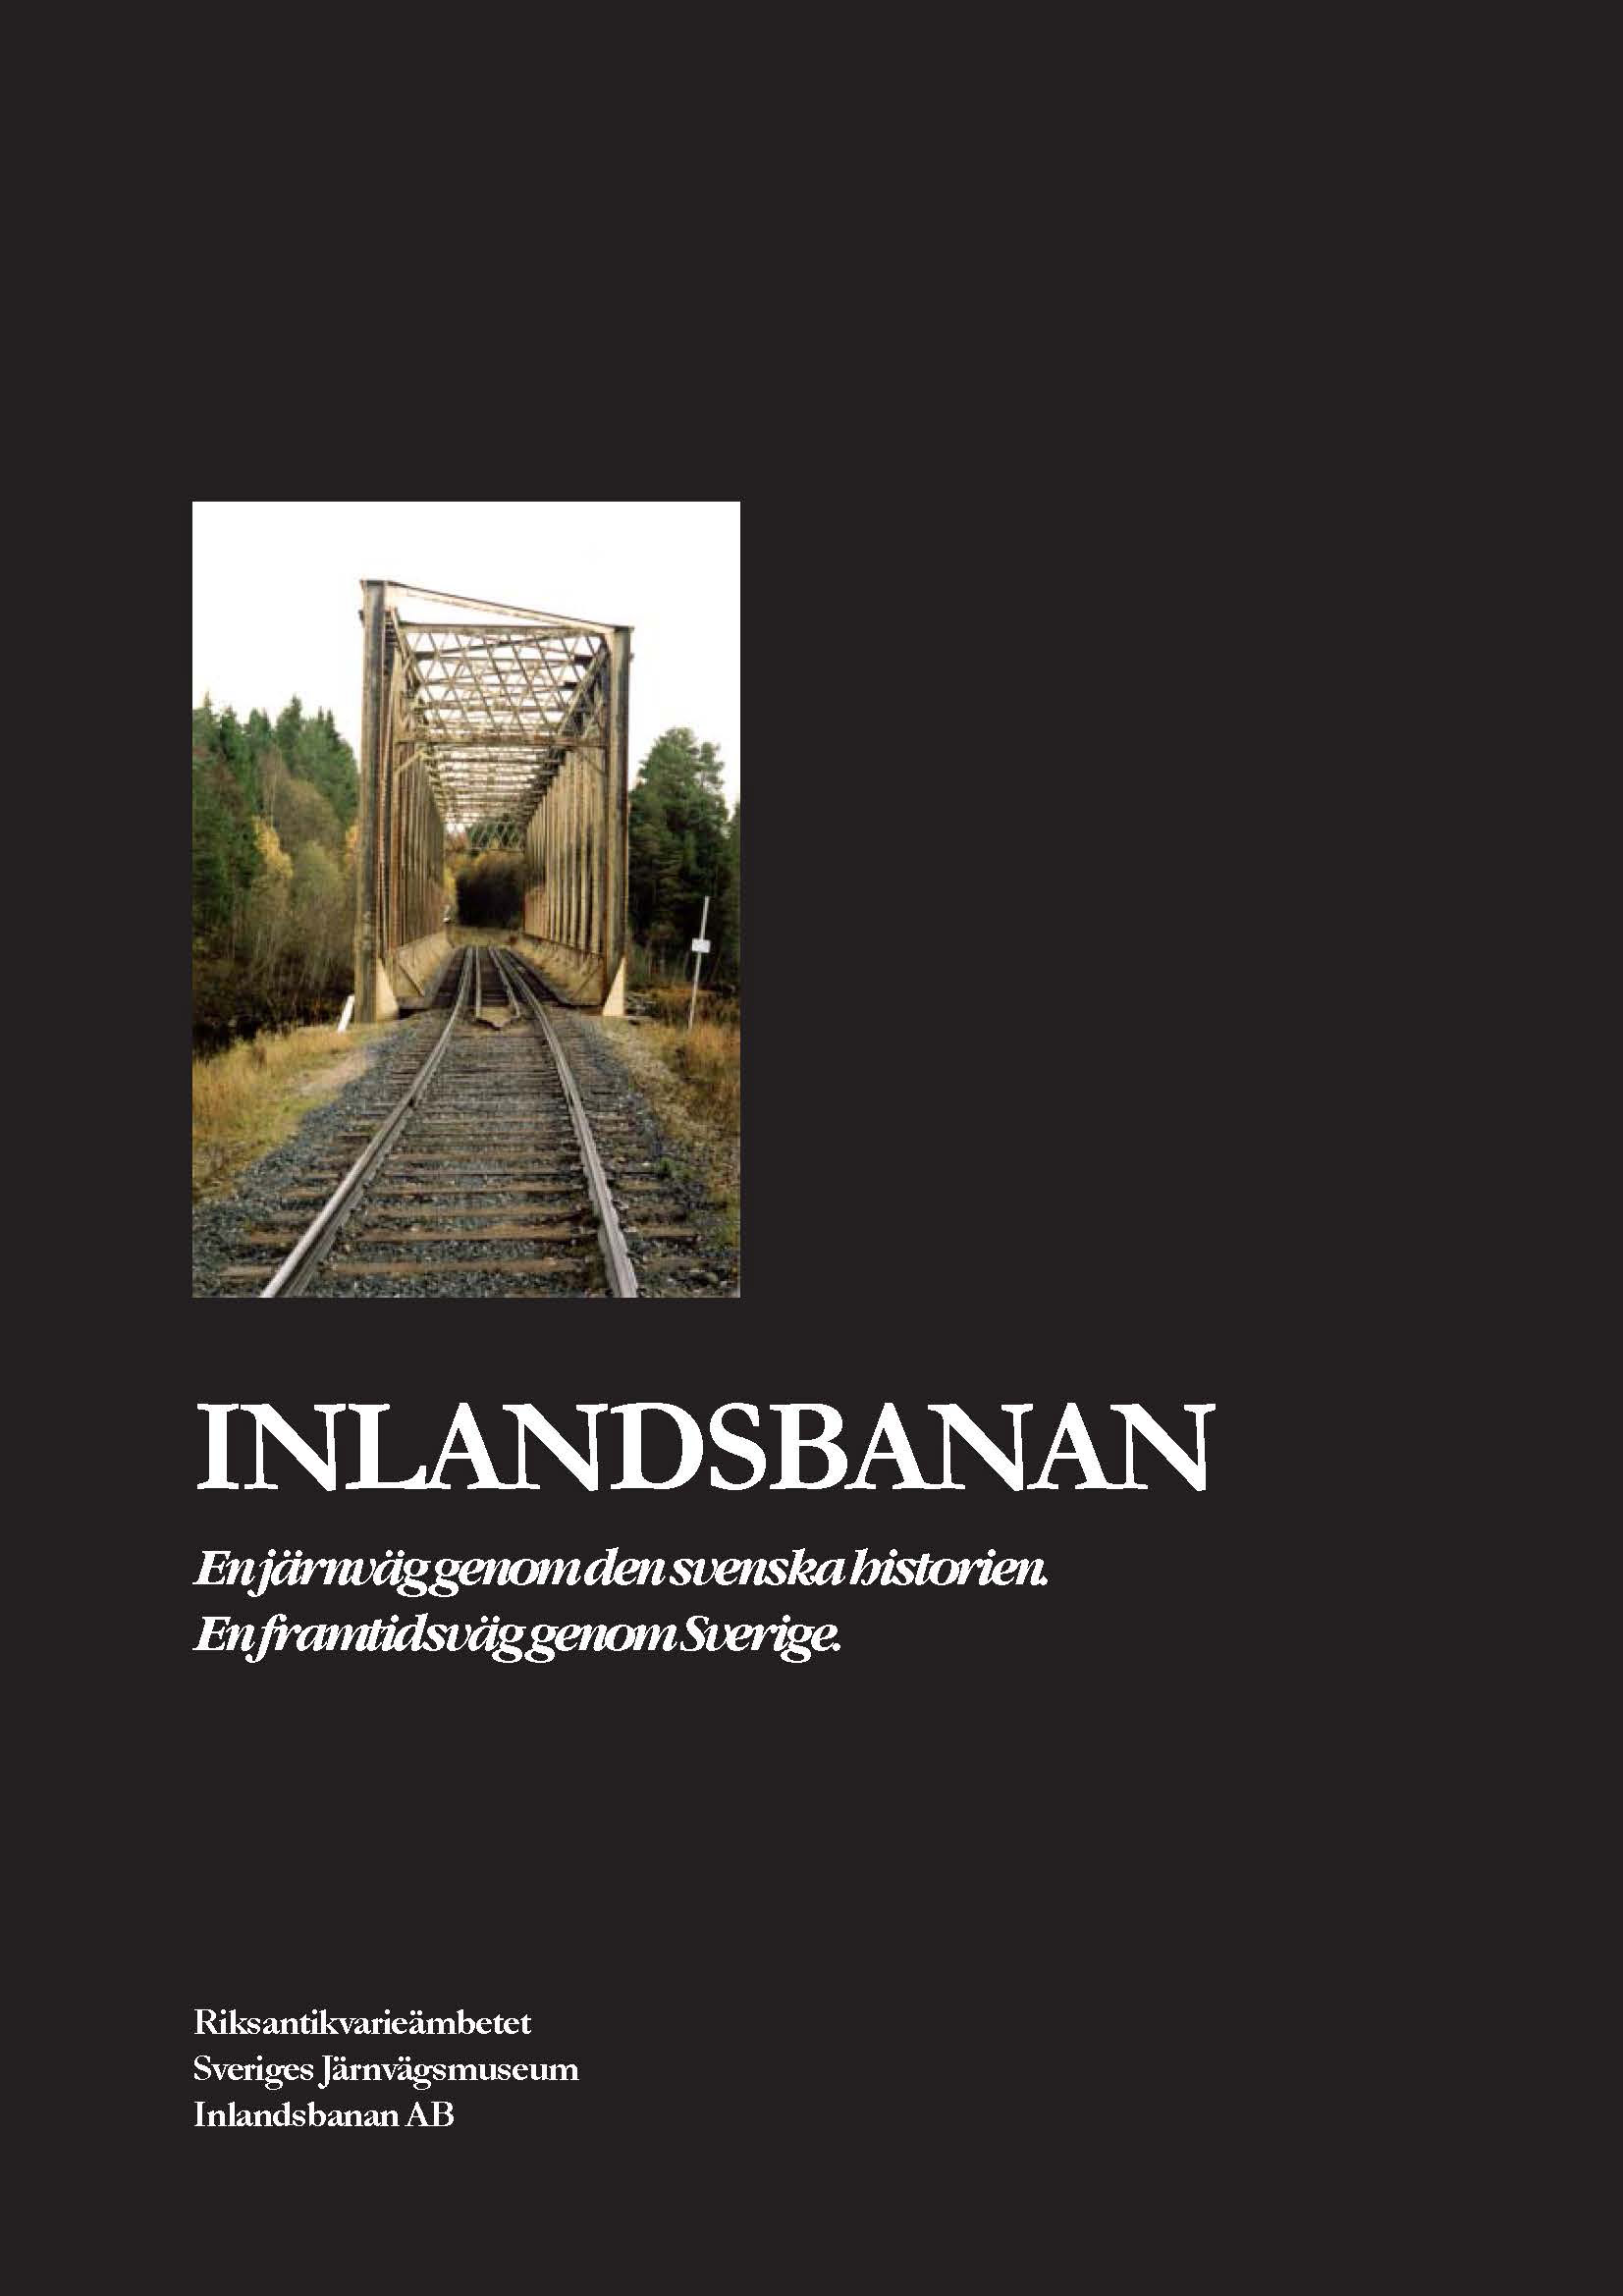 Inlandsbanan -En jrnvag genom den svenska historien (Riksantikvariembetet)